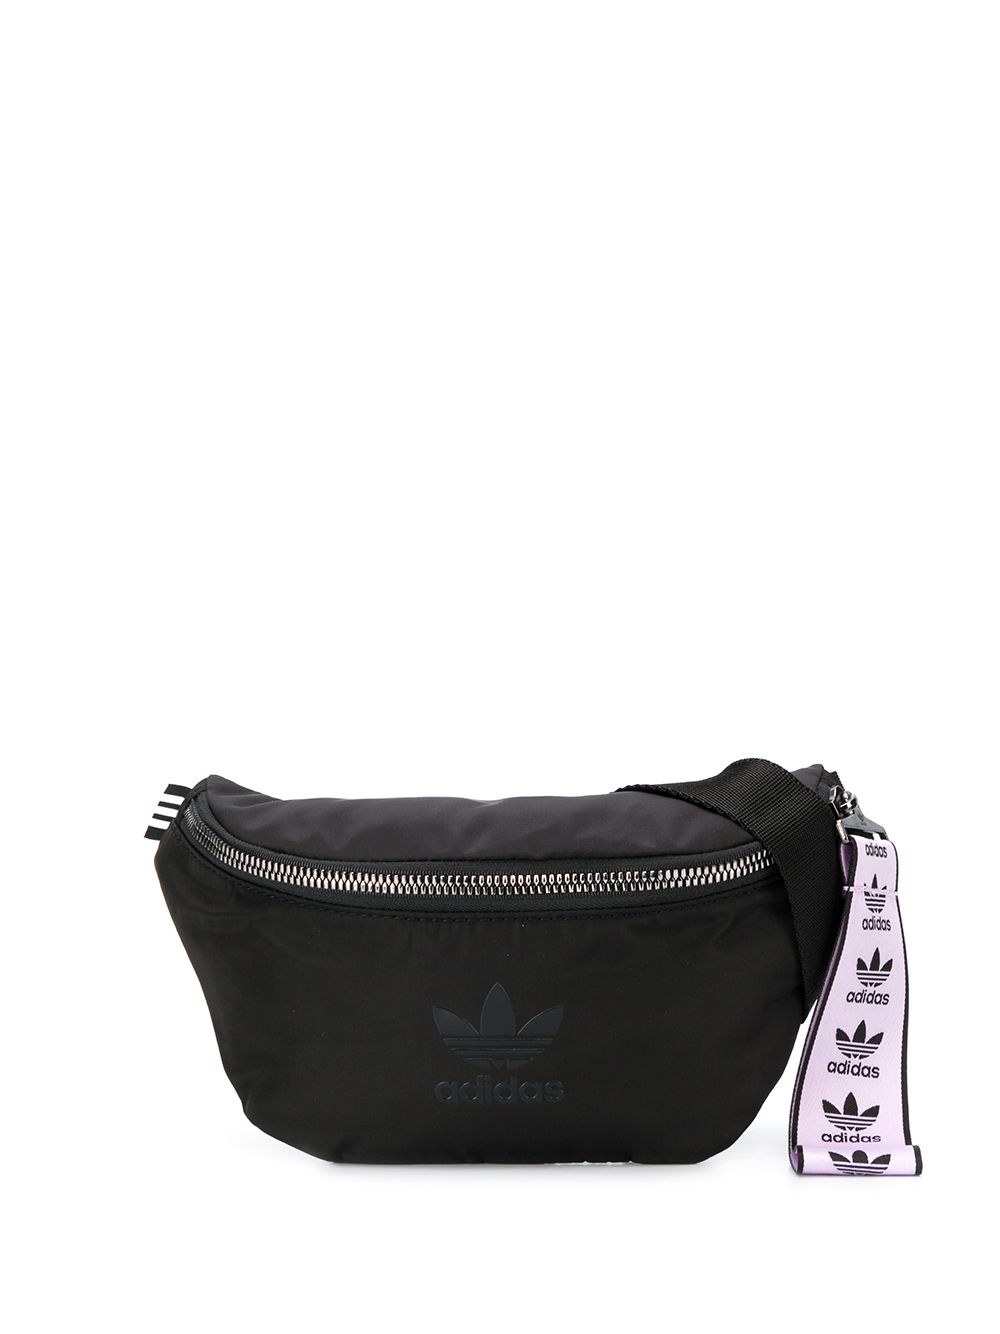 фото Adidas поясная сумка с логотипом